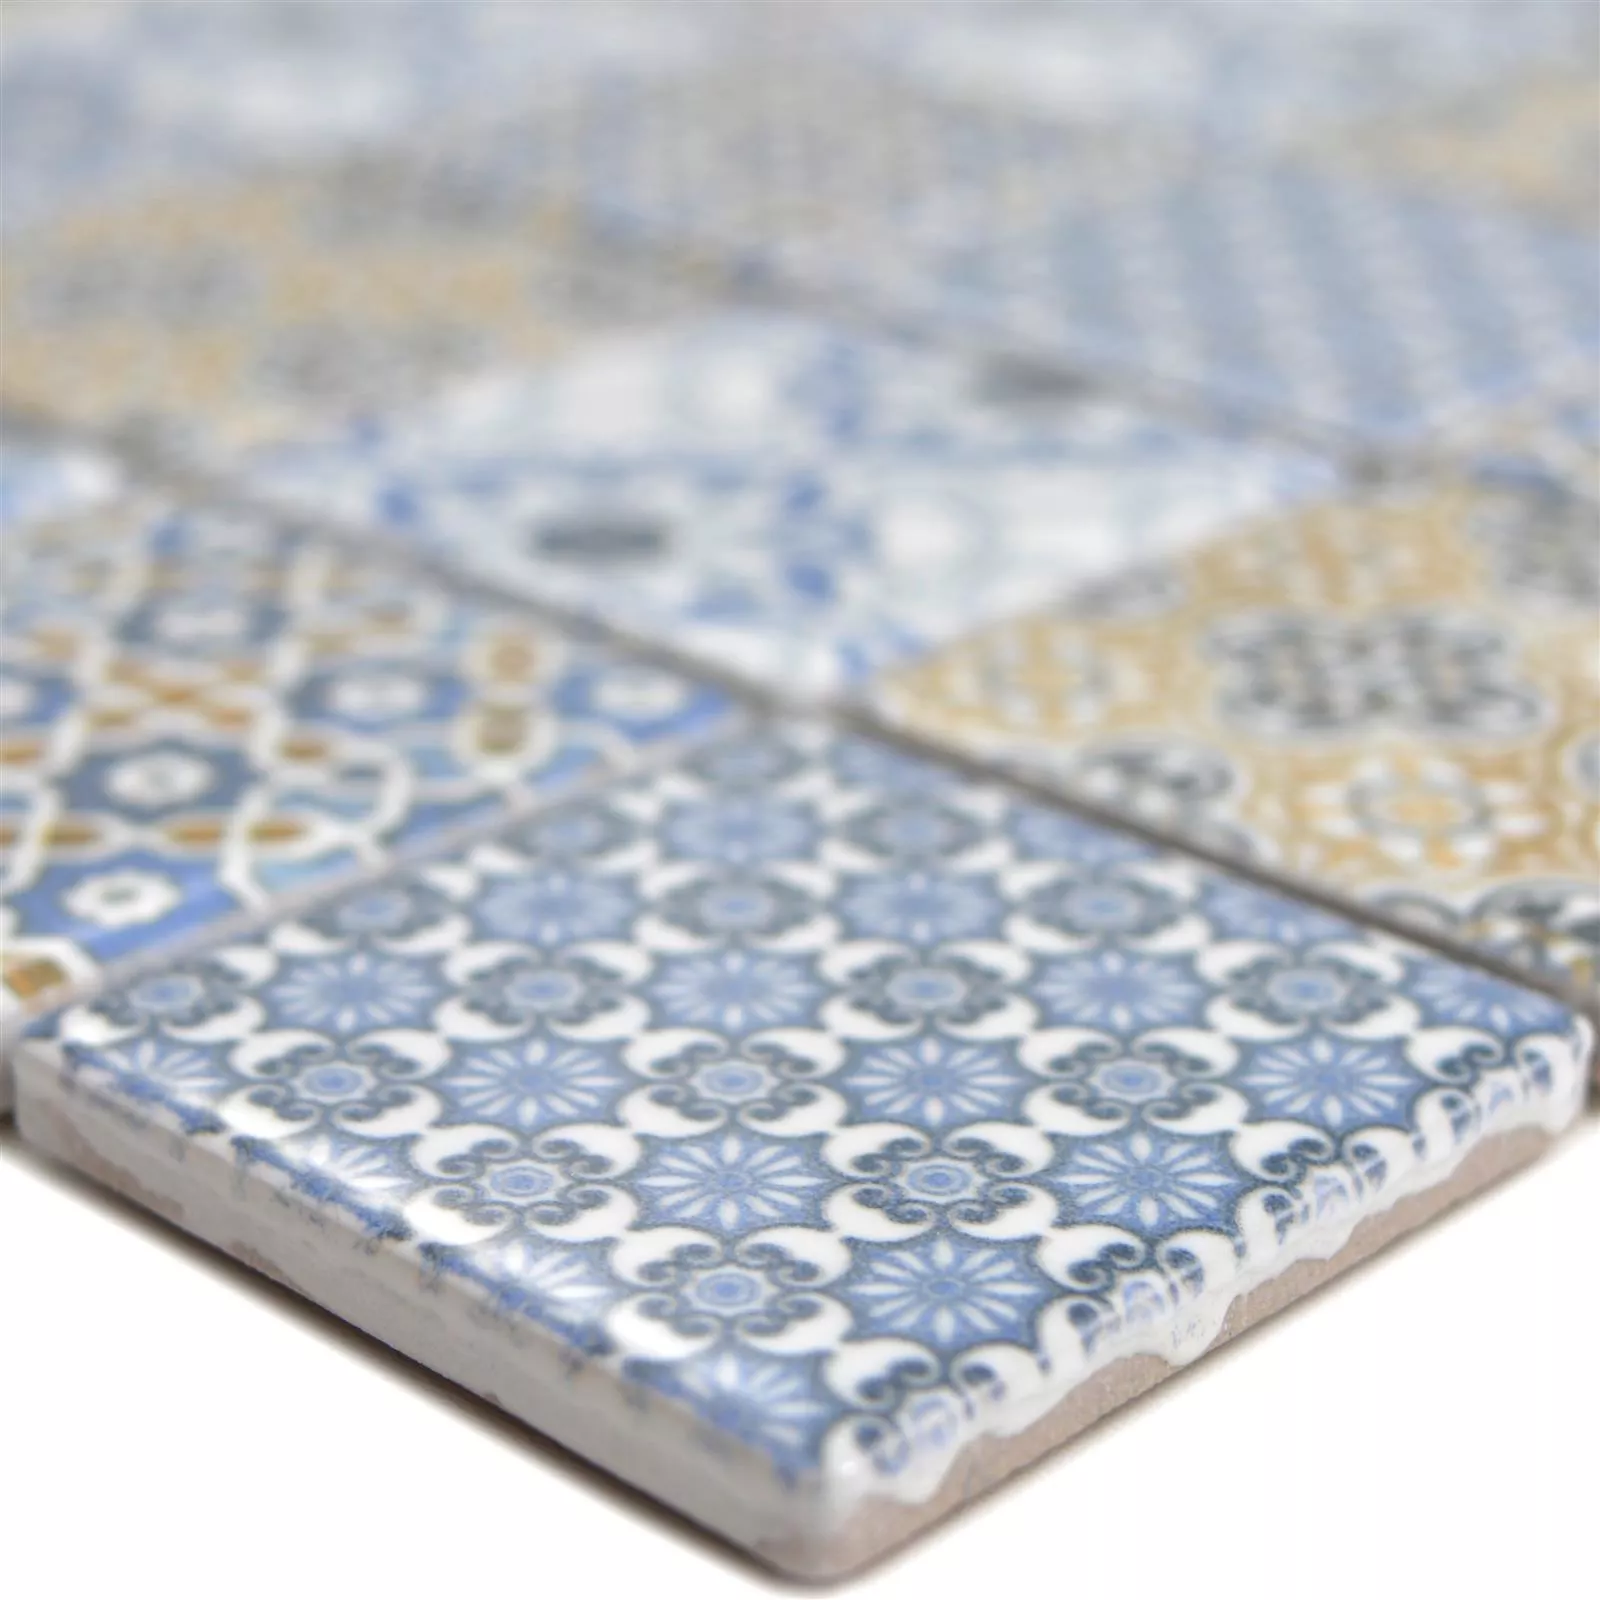 Cerâmica Azulejo Mosaico Daymion Óptica Retrô Quadrada 47 Azul Marrom